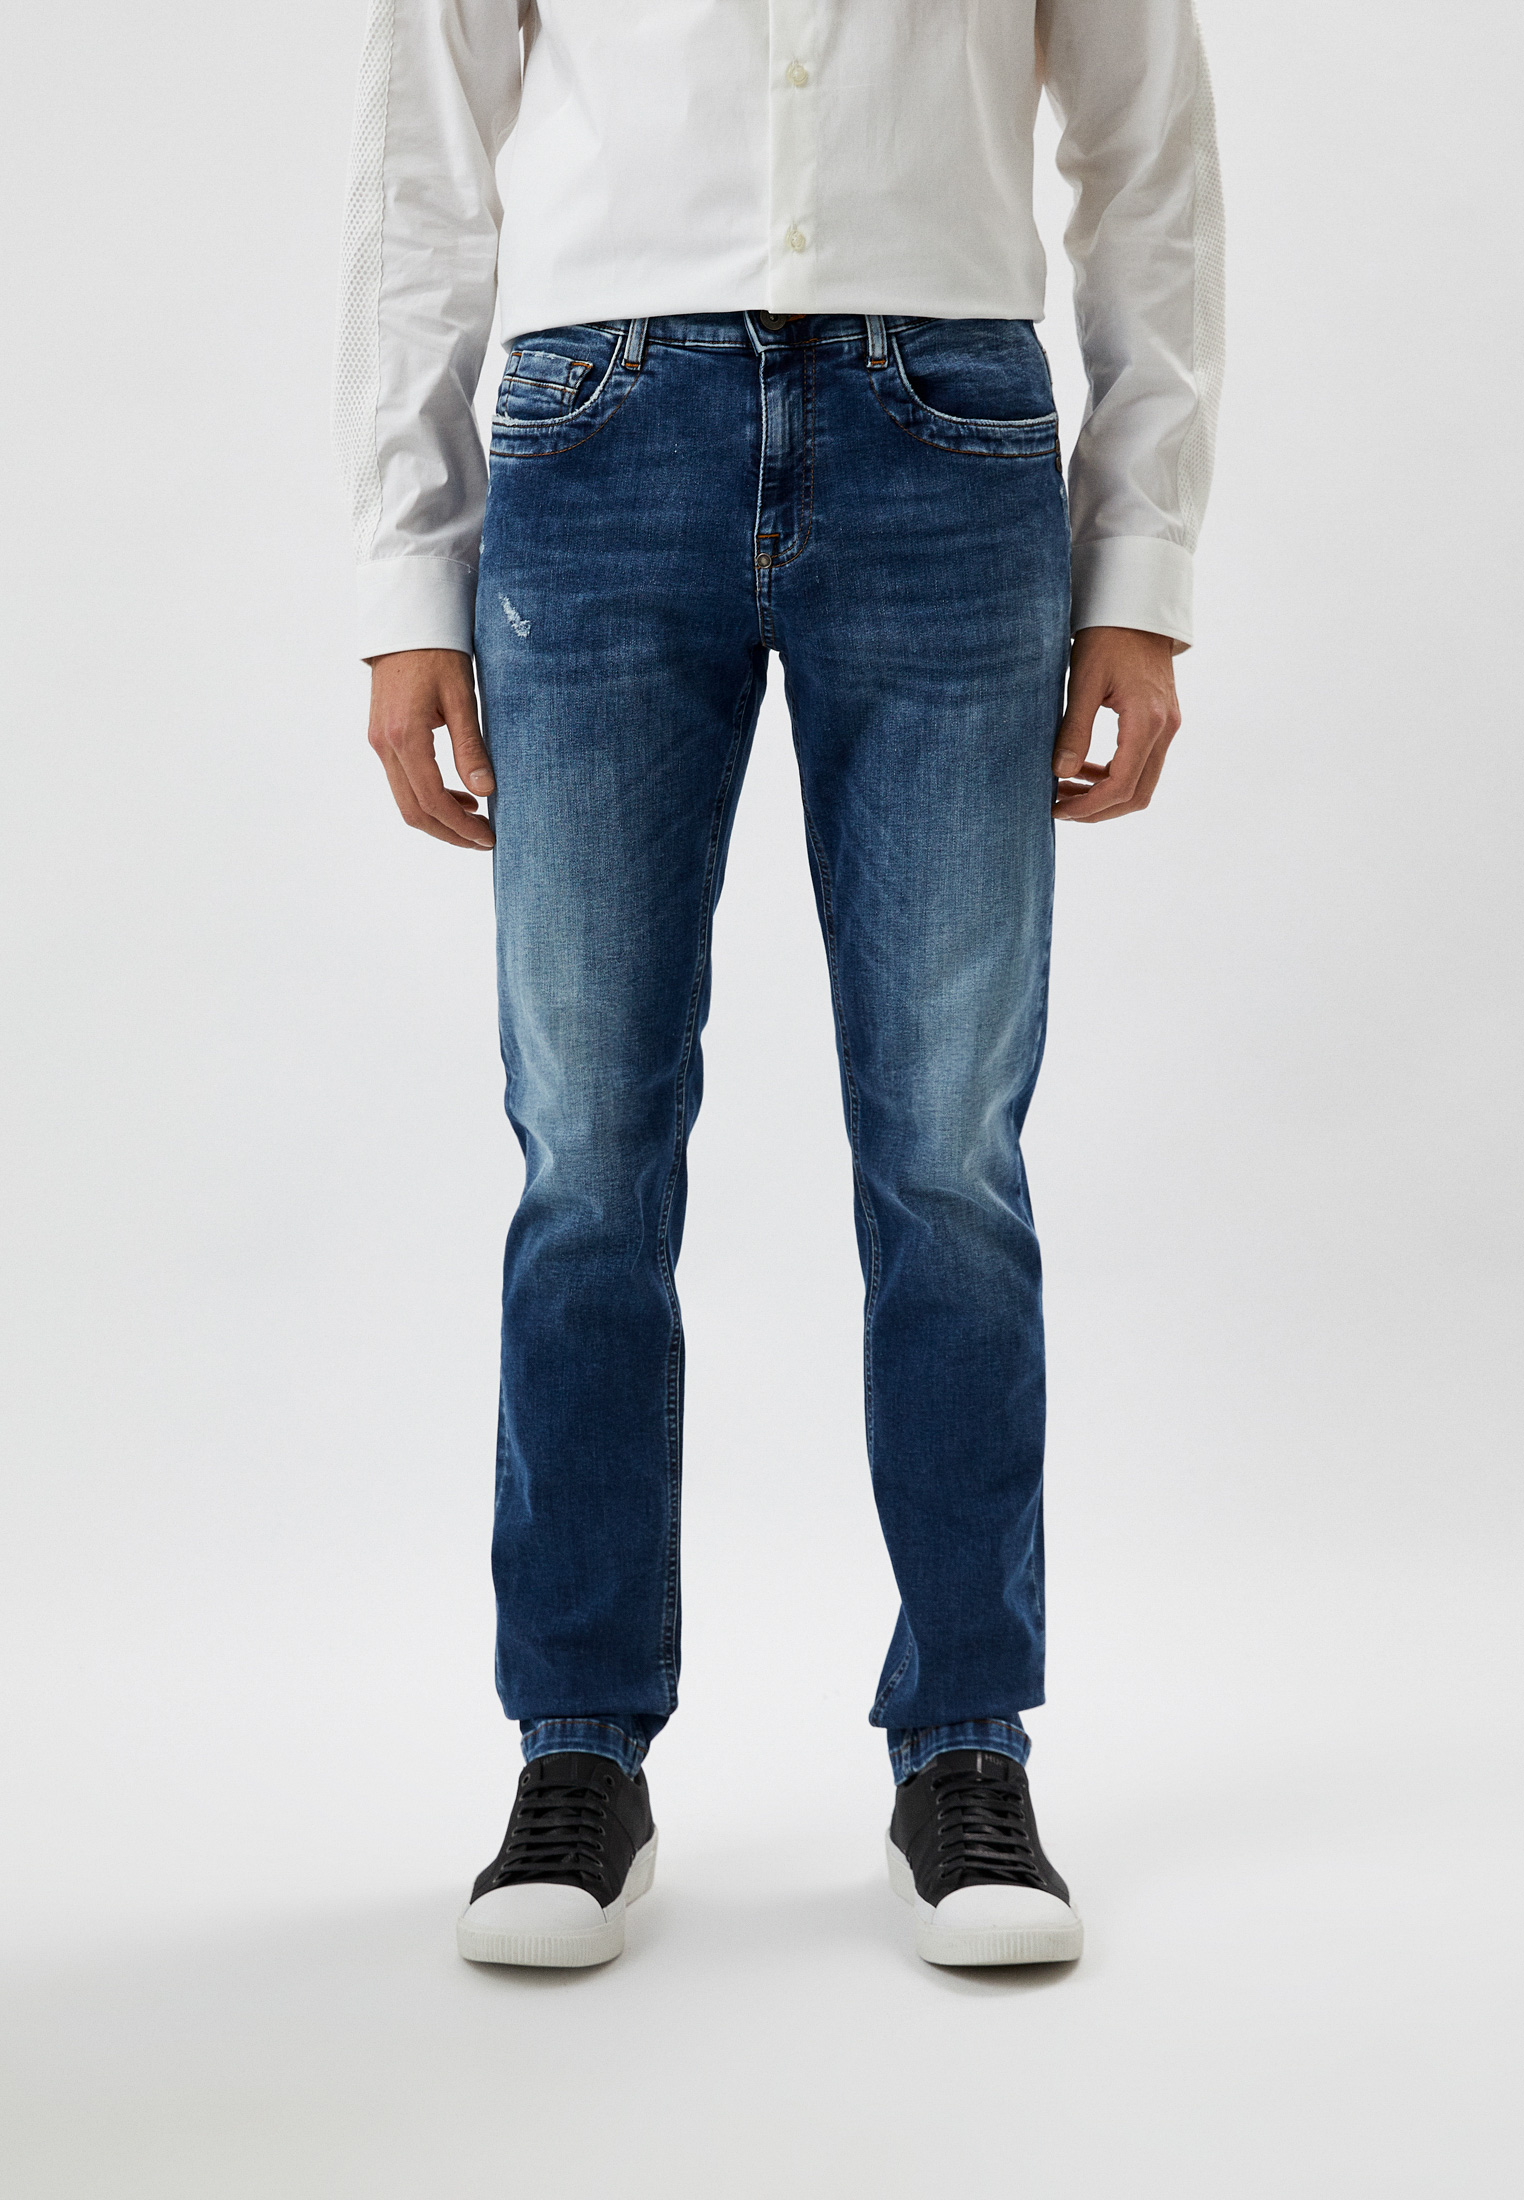 Мужские зауженные джинсы Bikkembergs (Биккембергс) C Q 101 88 S 3511: изображение 5